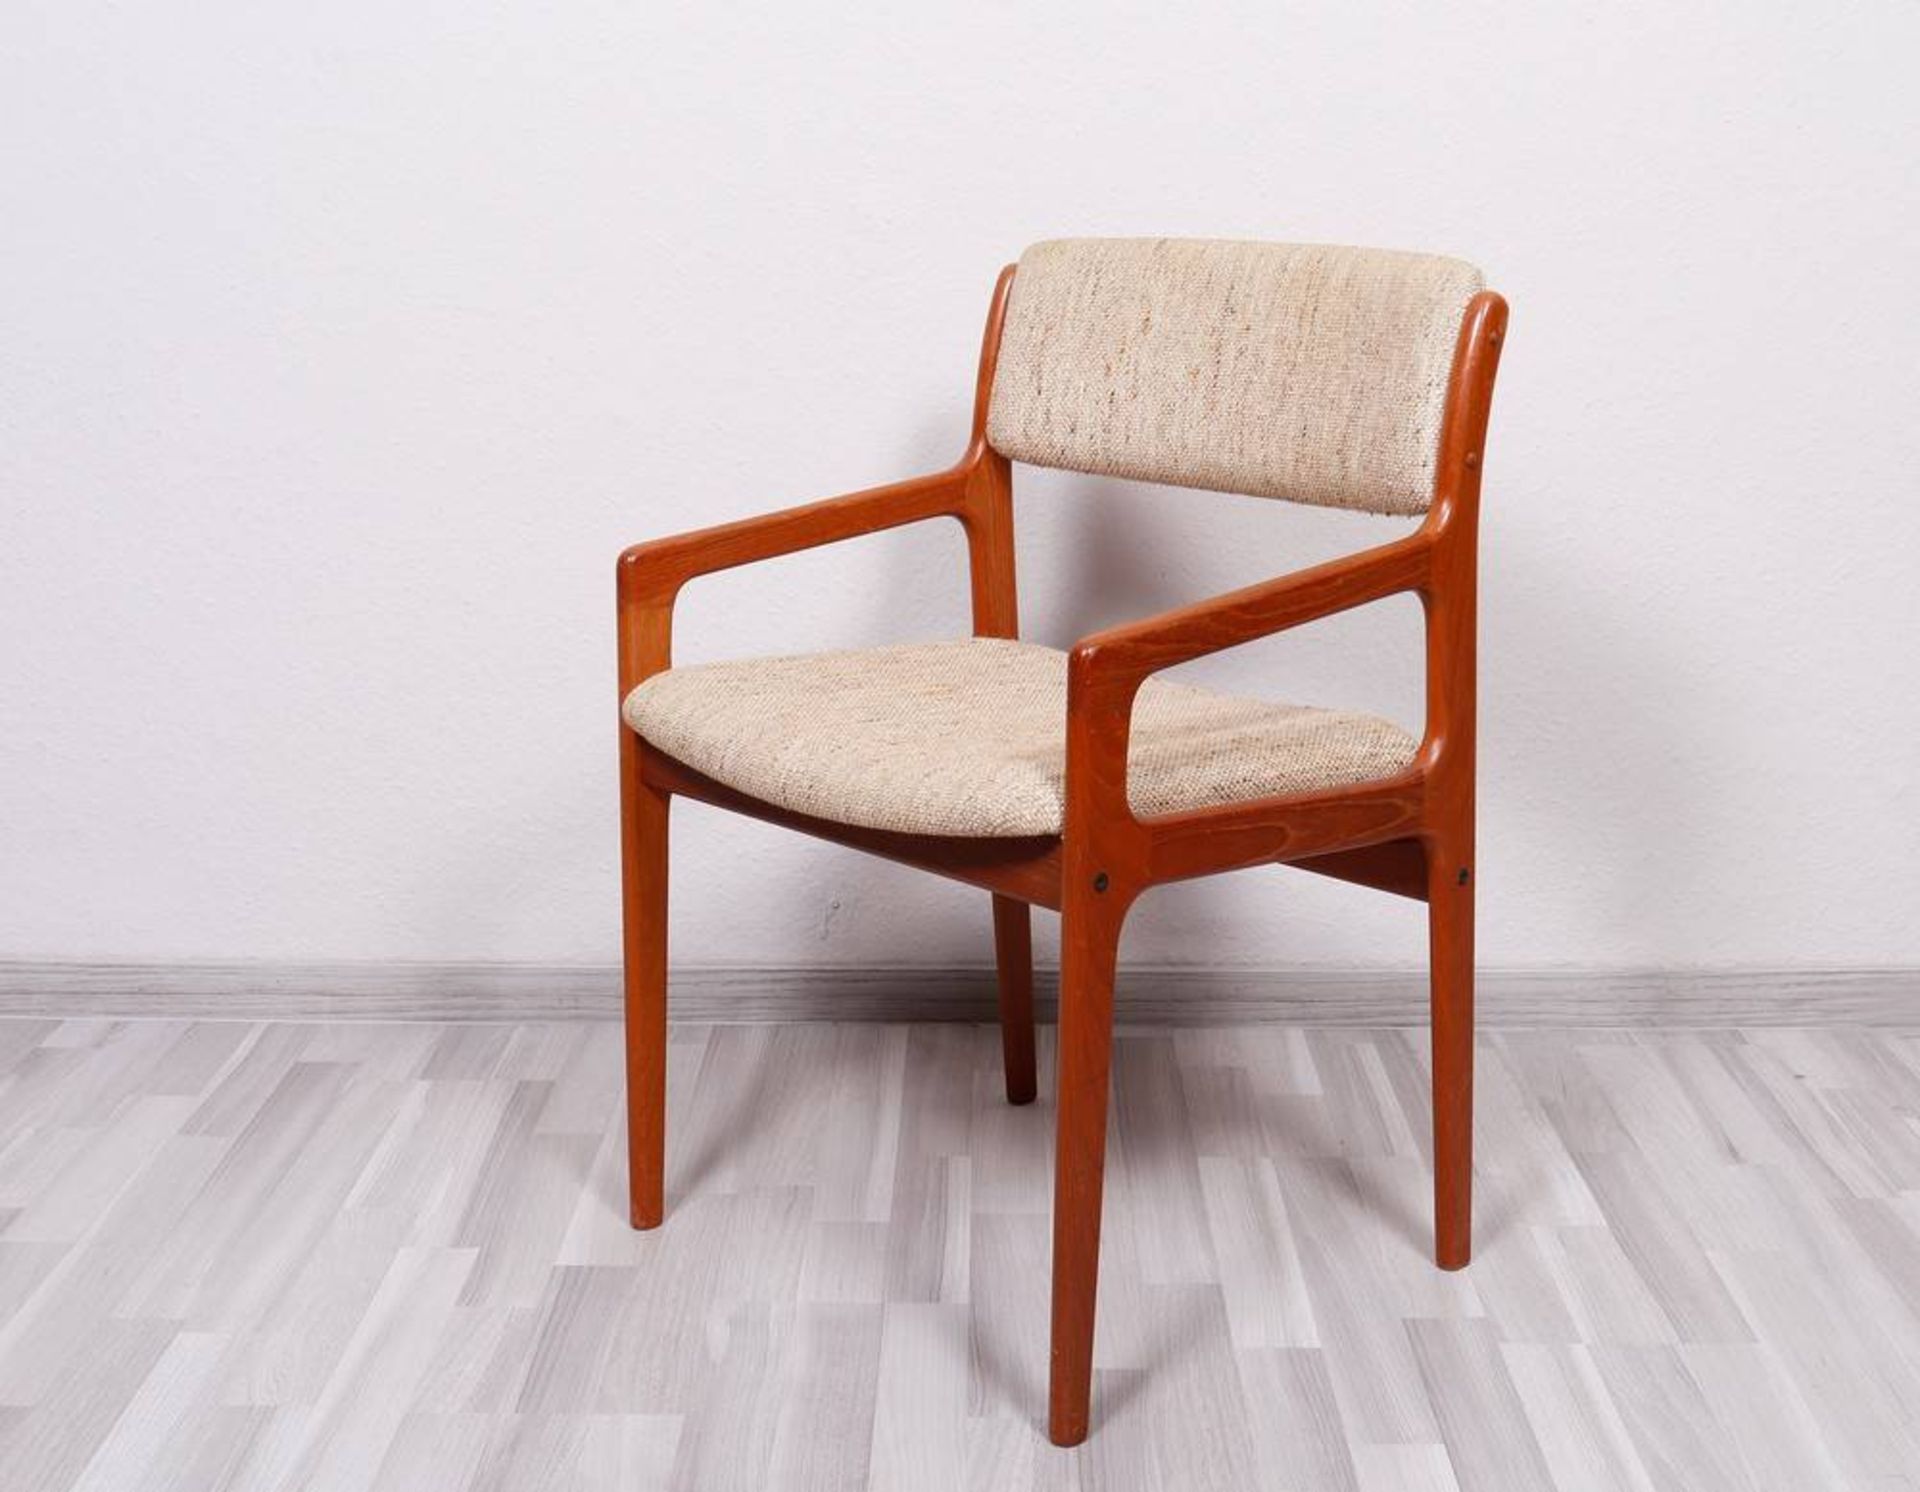 6 armchairs, Den Blaa factory, Glostrup, Denmark, c. 1960 - Image 2 of 4